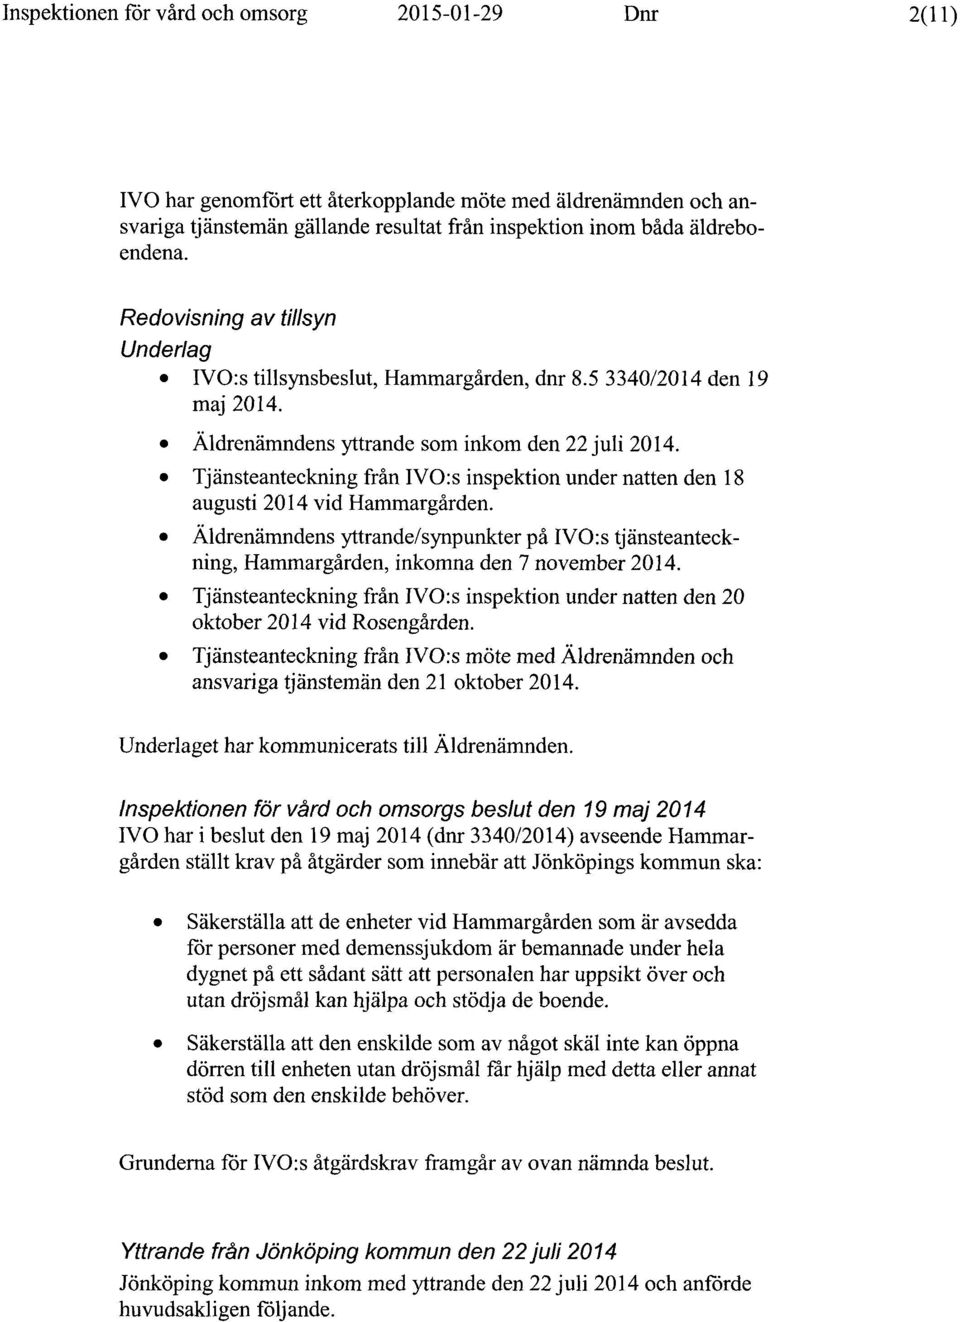 Tjänsteanteckning från IVO:s inspektion under natten den 18 augusti 2014 vid Hammargården. Äldrenämndens yttrande/synpunkter på IVO:s tjänsteanteckning, Hammargården, inkomna den 7 november 2014.